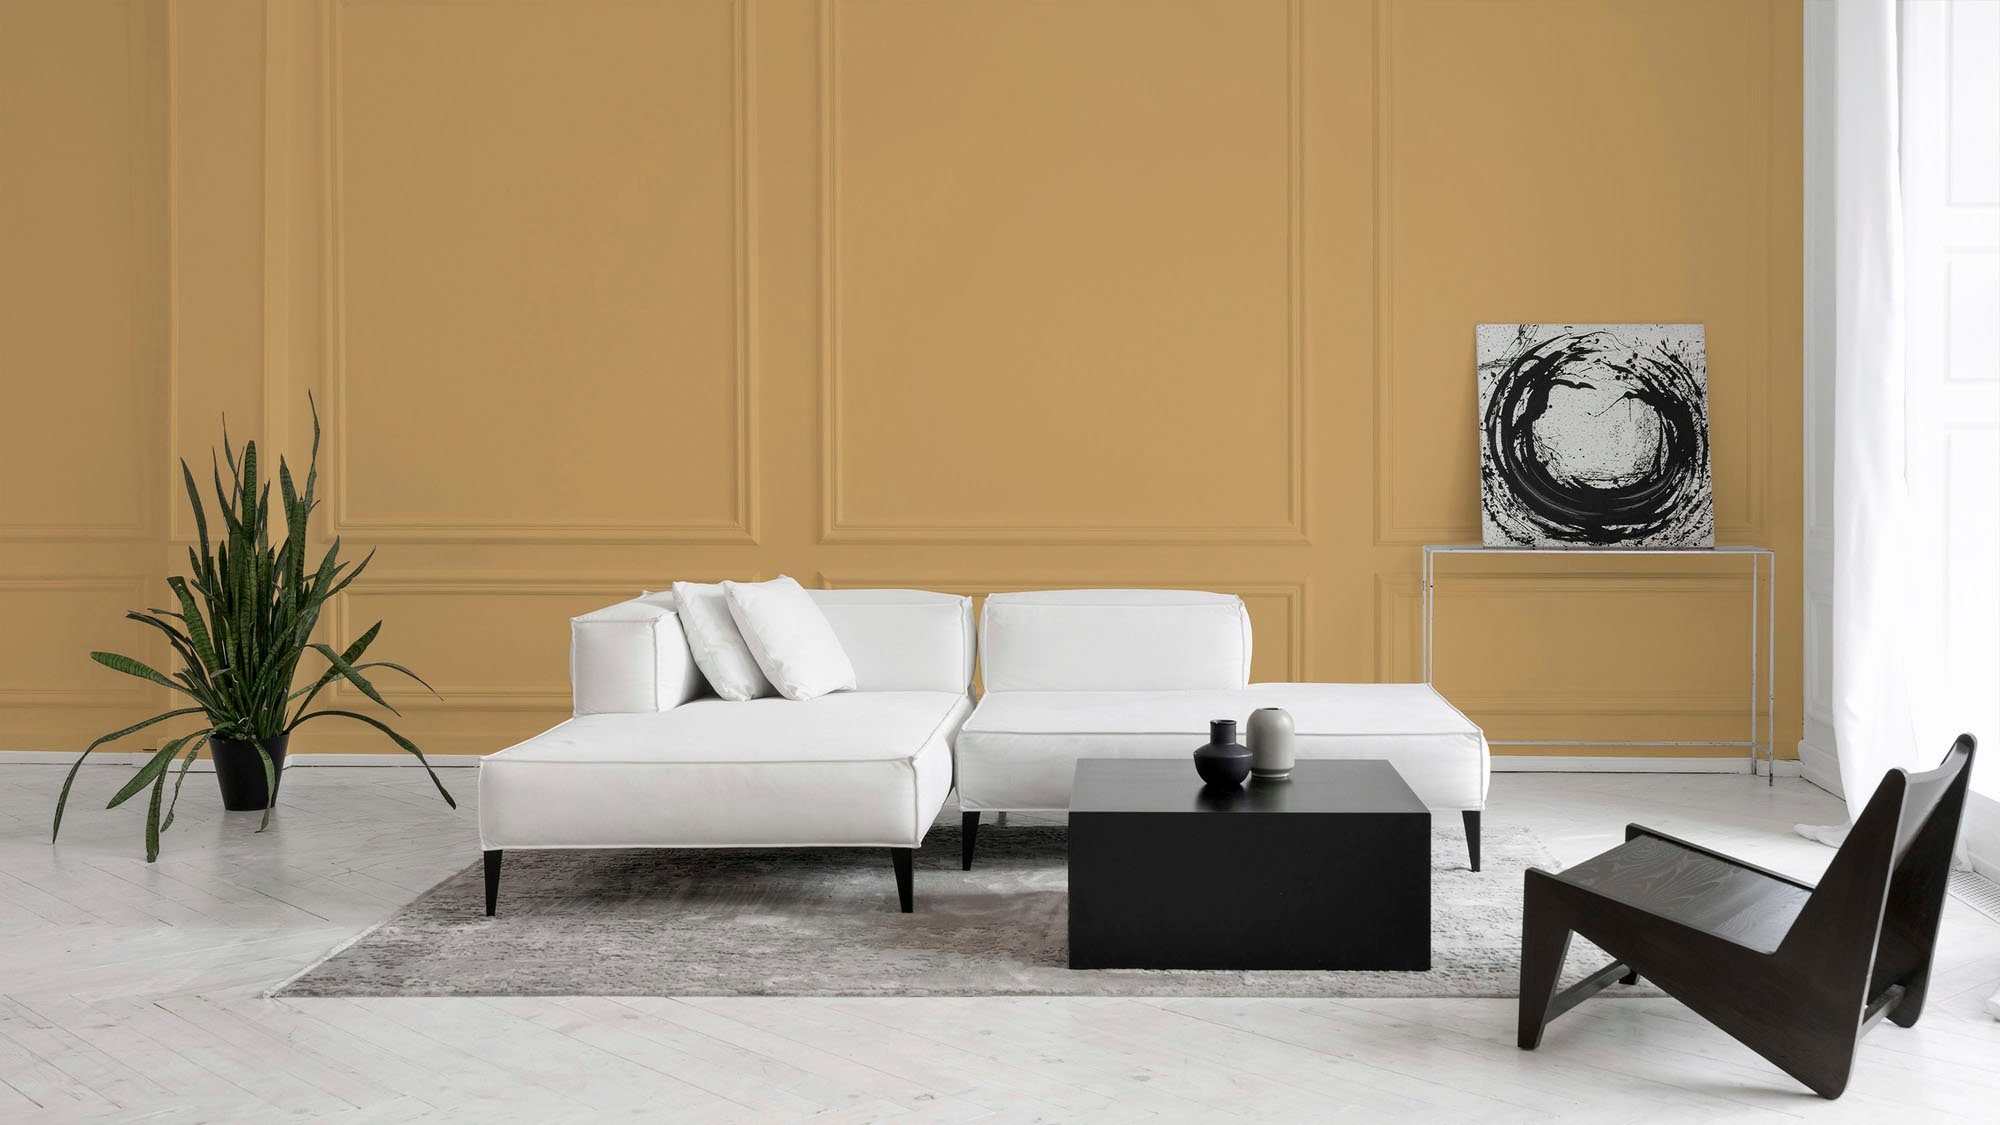 Wohnzimmer, c8011 Création A.S. Schlafzimmer, für Wandfarbe Flur und saffron Tuchmatt PURO smooth Farbwelt smooth Orange Premium Innenwandfarbe saffron, ideal Küche,